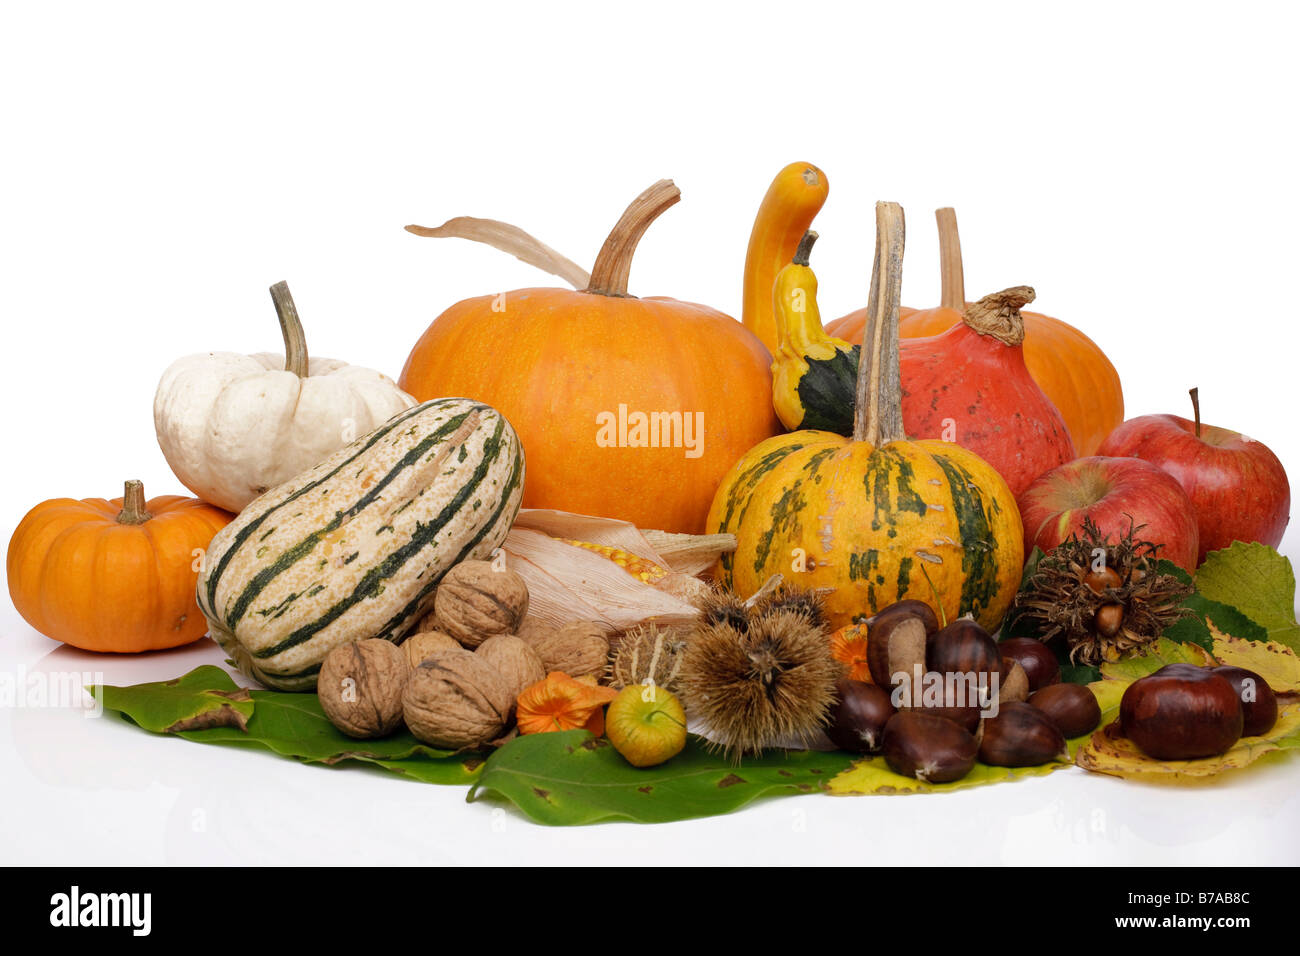 Bodegón con cucurbita pepo, calabazas y frutas comestibles de otoño Foto de stock